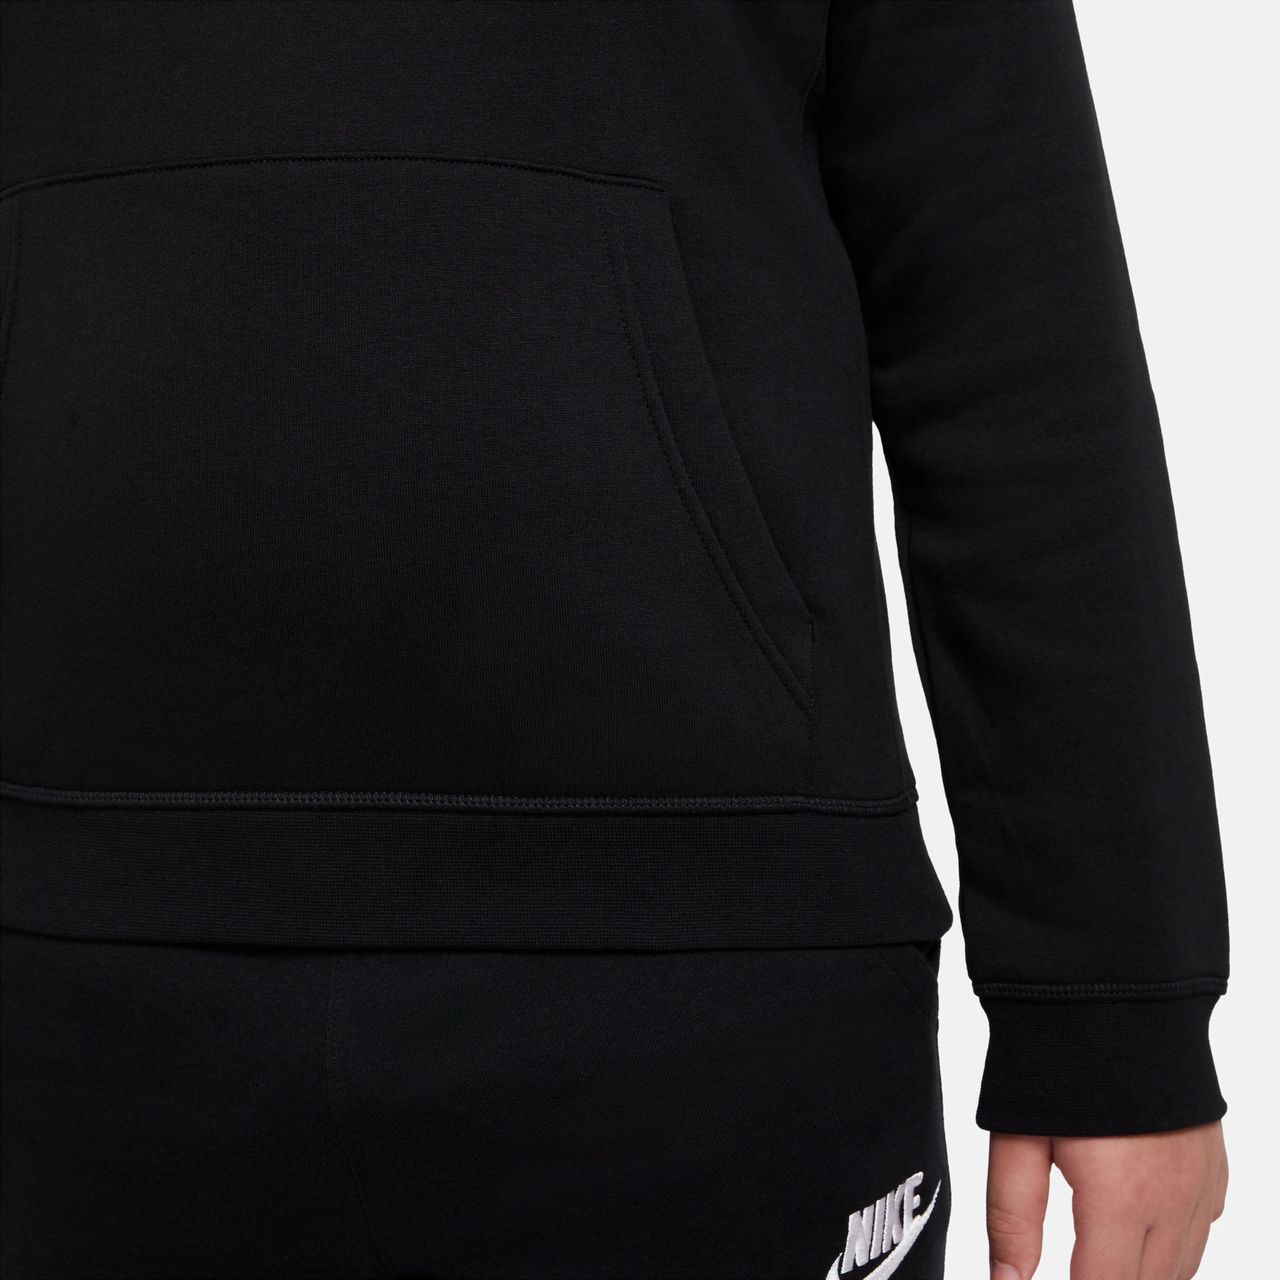 Nike Sportswear Hoodie für ältere Kinder (Jungen) (erweiterte Größe) - Schwarz